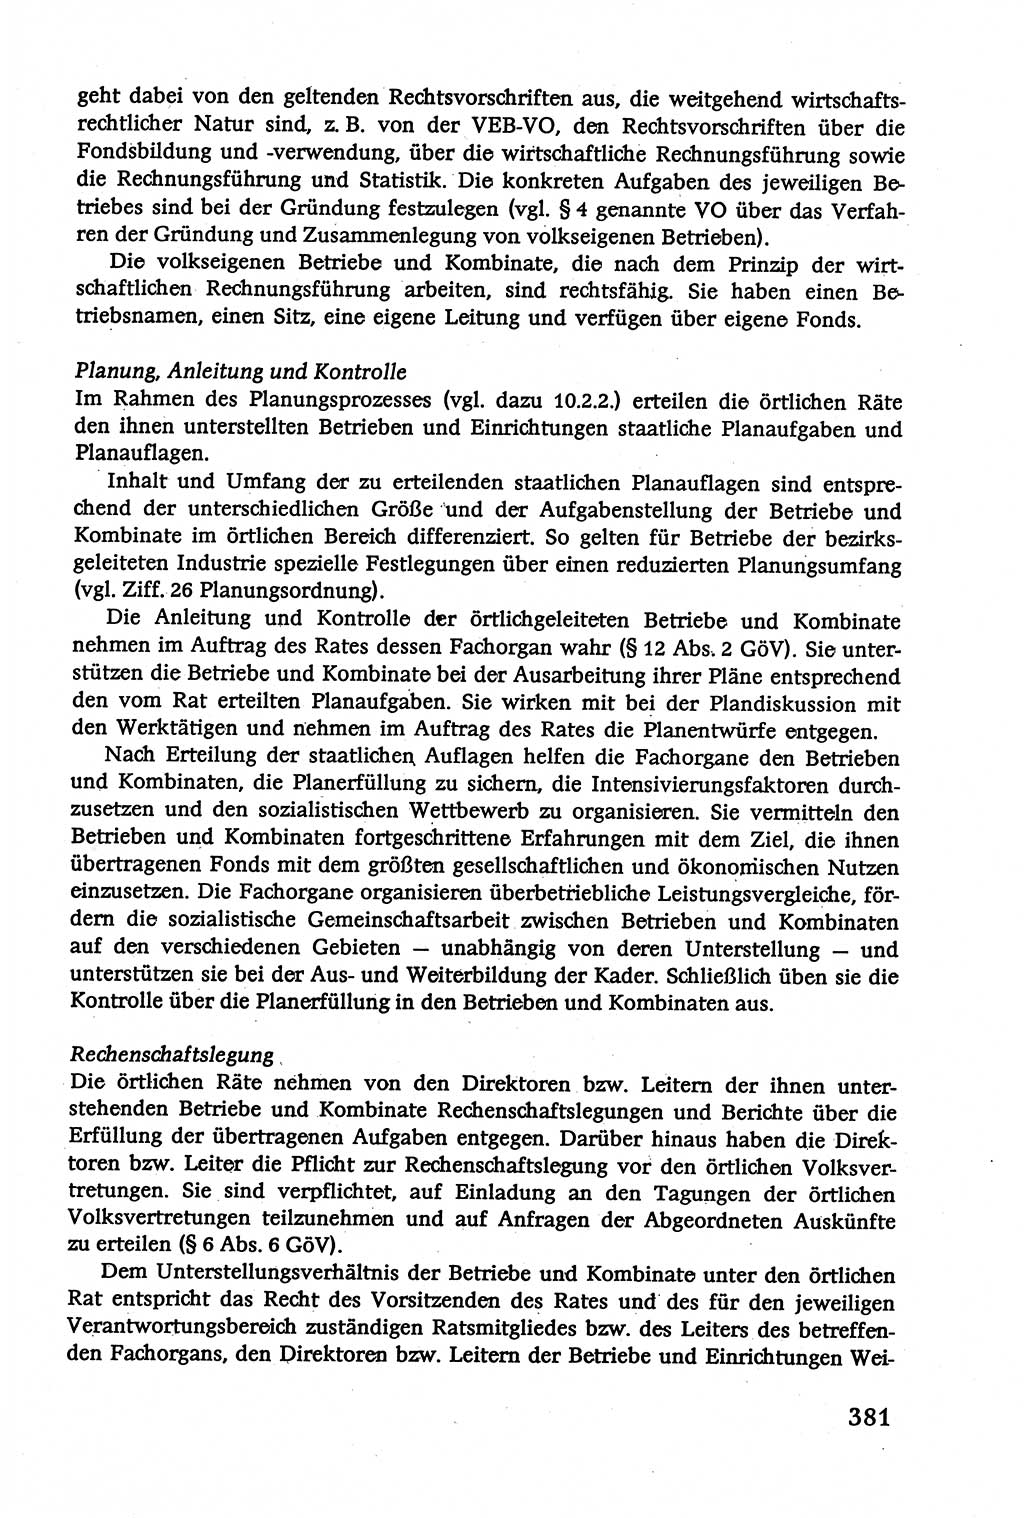 Verwaltungsrecht [Deutsche Demokratische Republik (DDR)], Lehrbuch 1979, Seite 381 (Verw.-R. DDR Lb. 1979, S. 381)